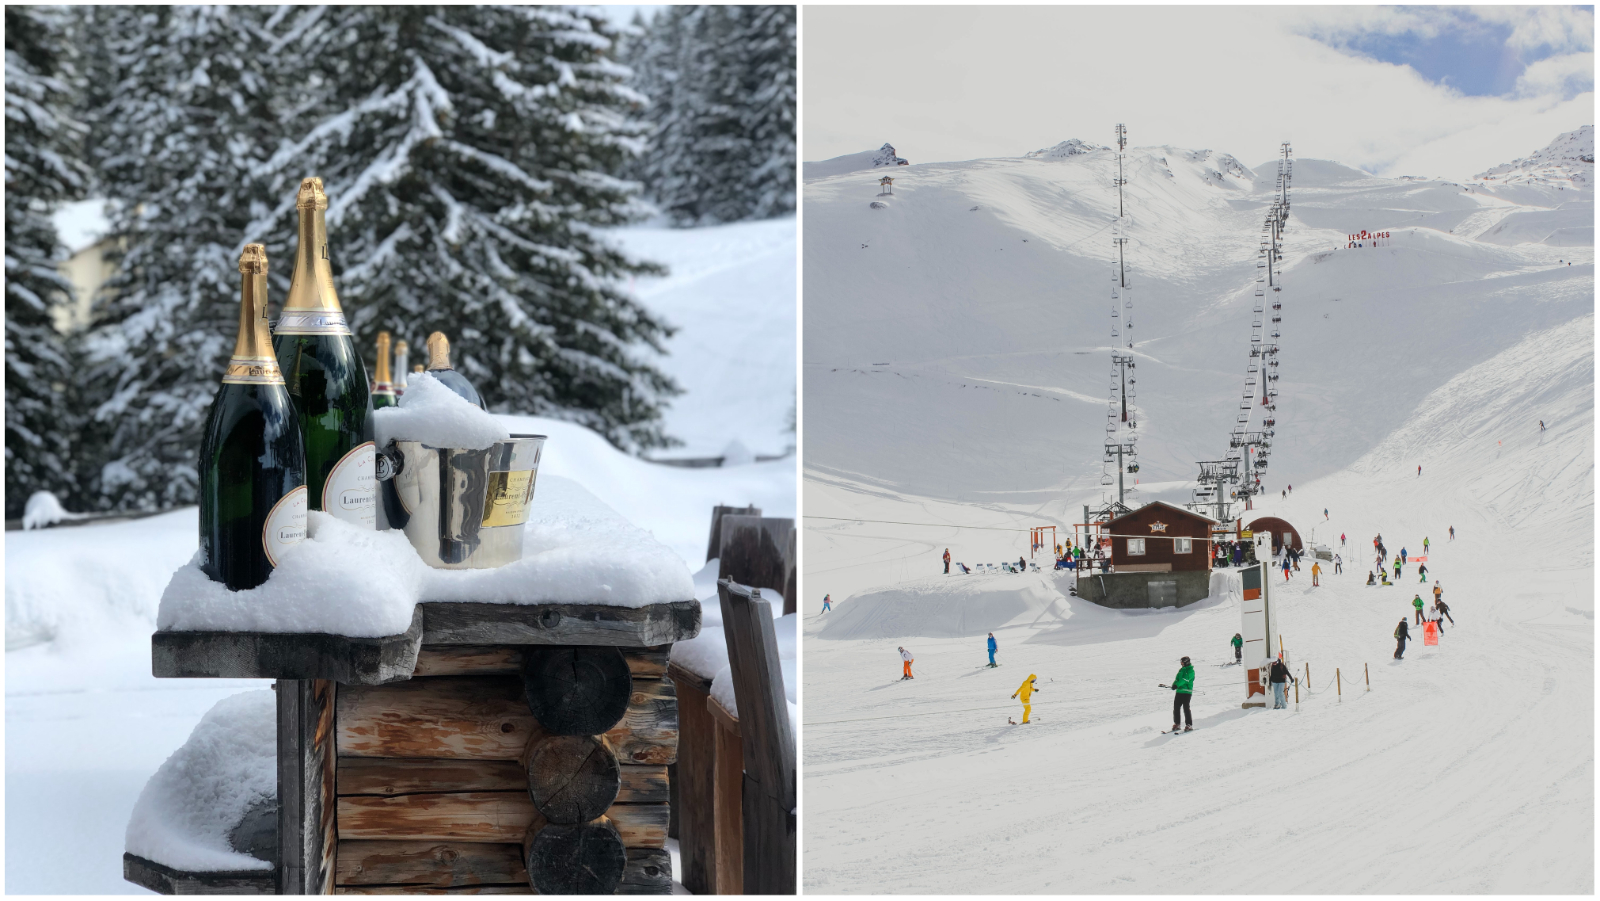 Evropska skijališta na kojima će ove zime biti najbolja après-ski zabava